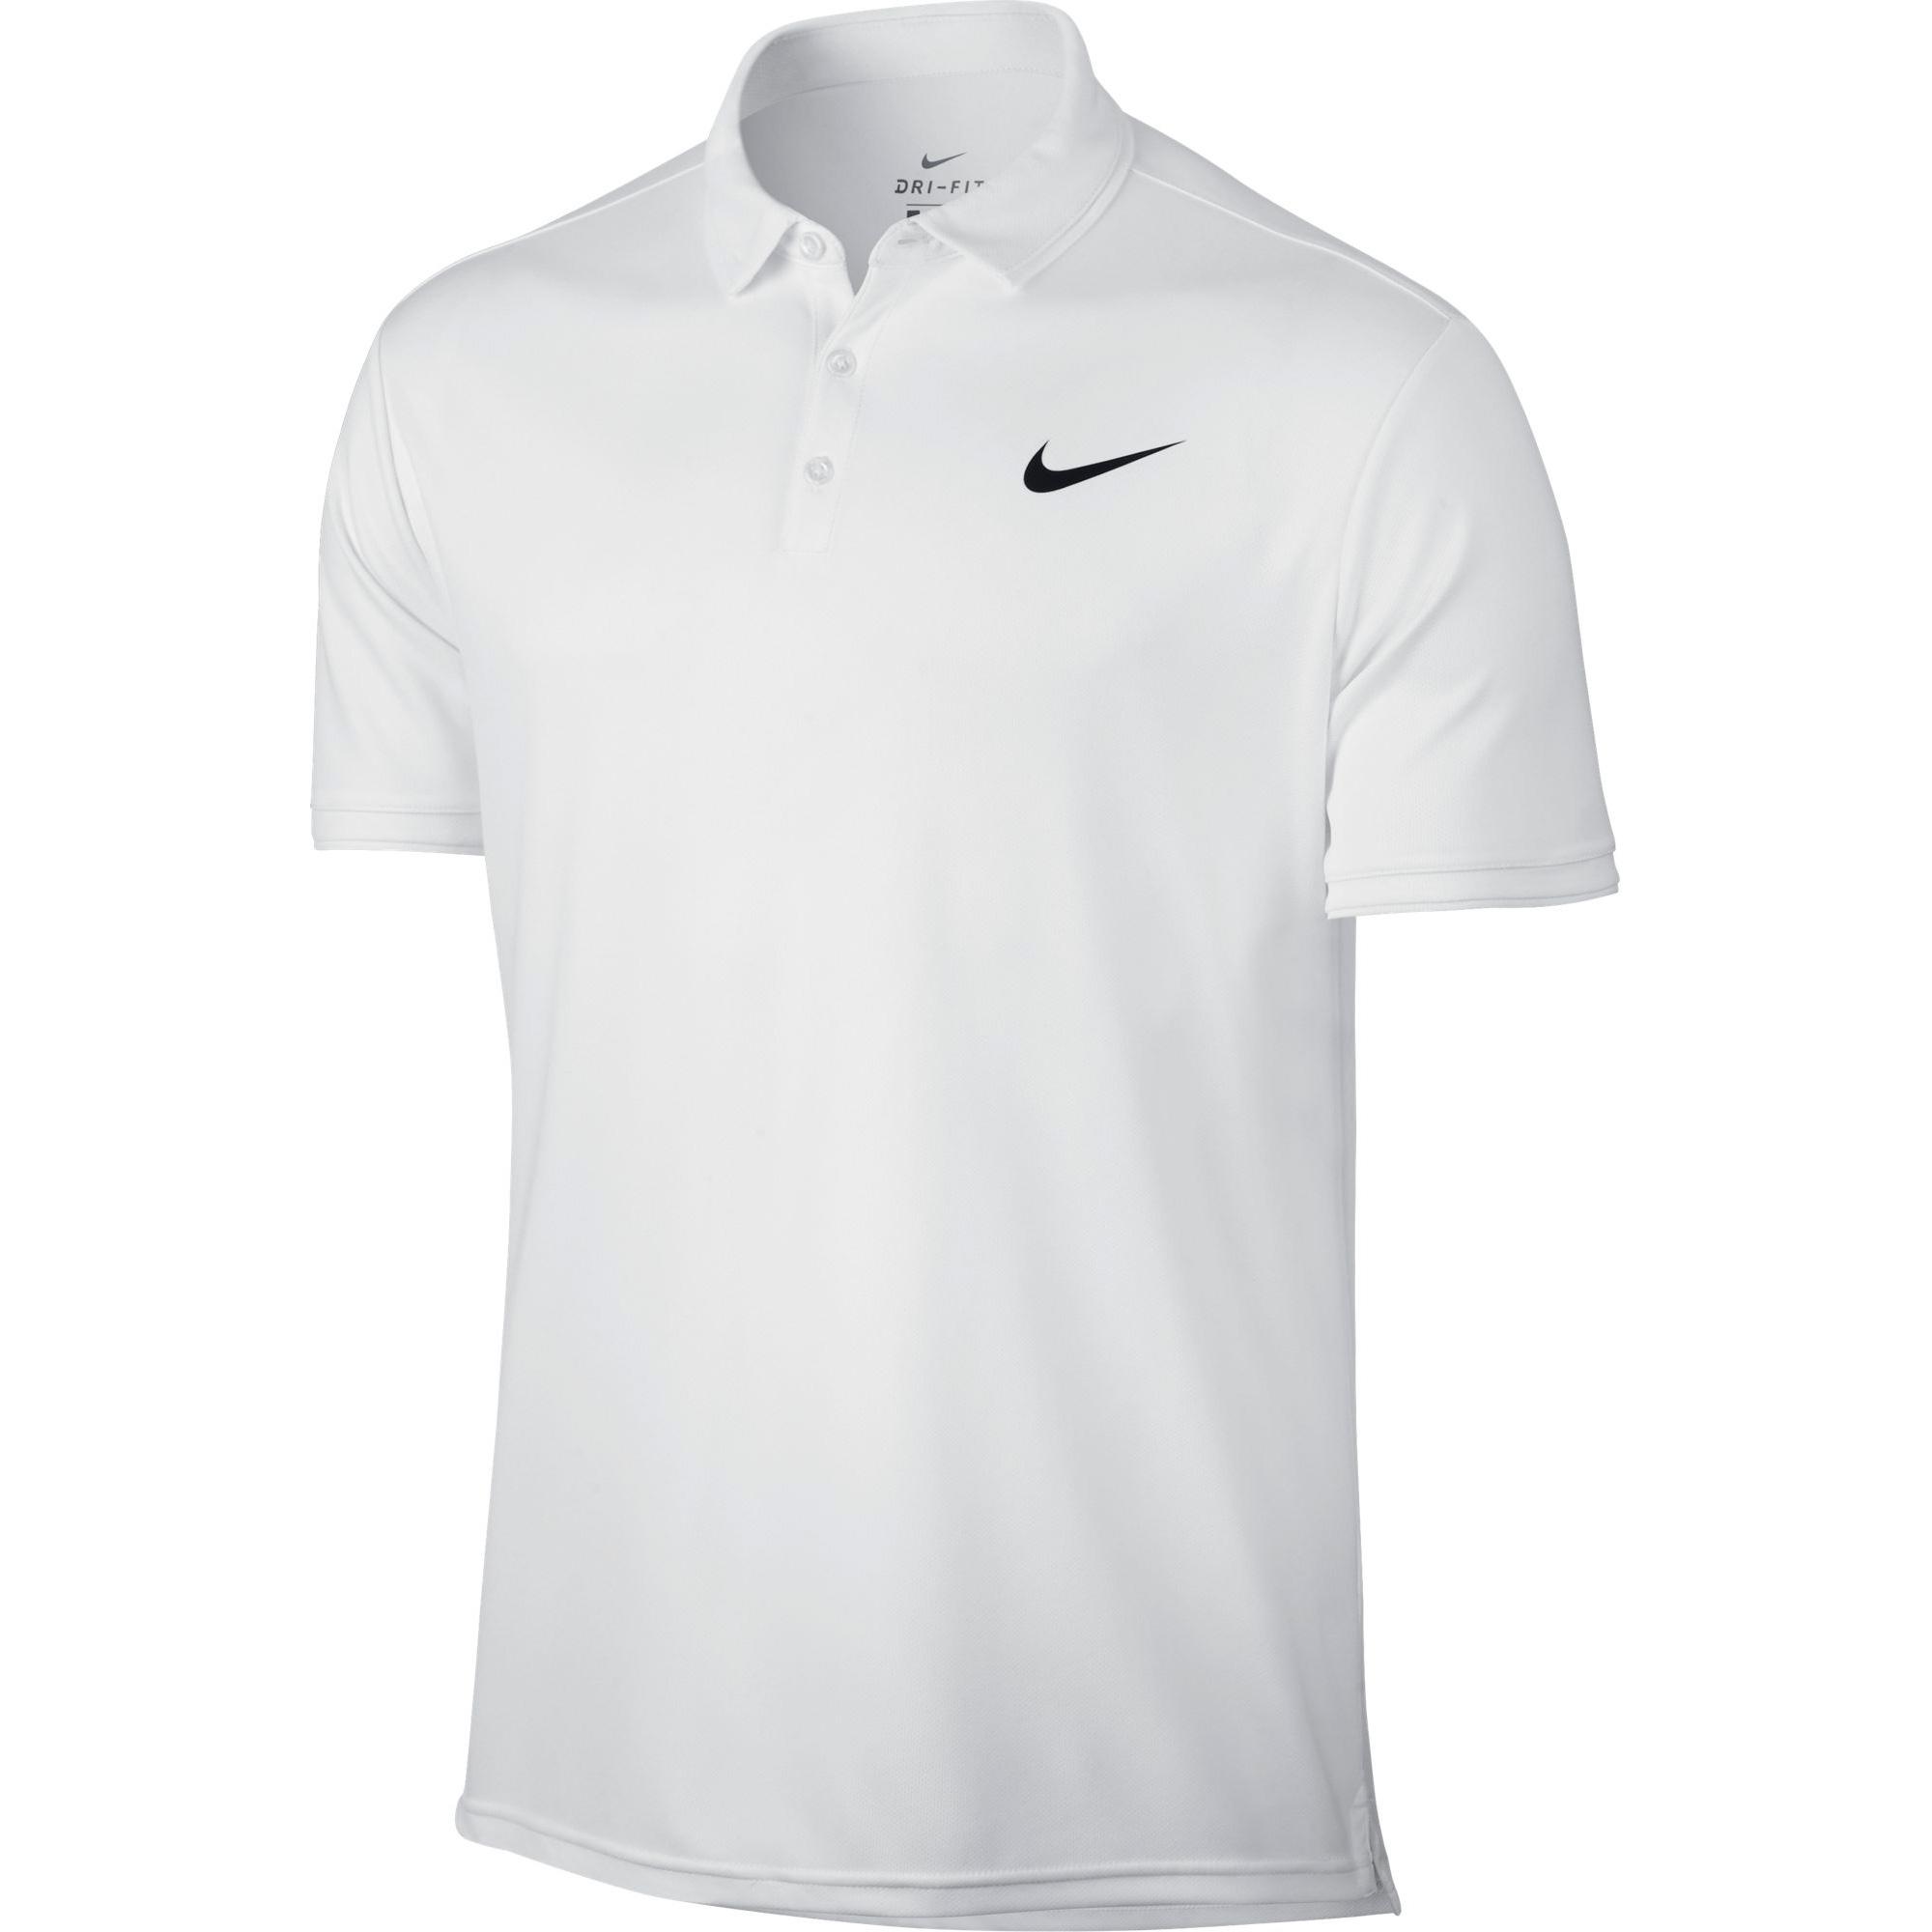 Nike Mens Dry Tennis Polo - White - Tennisnuts.com